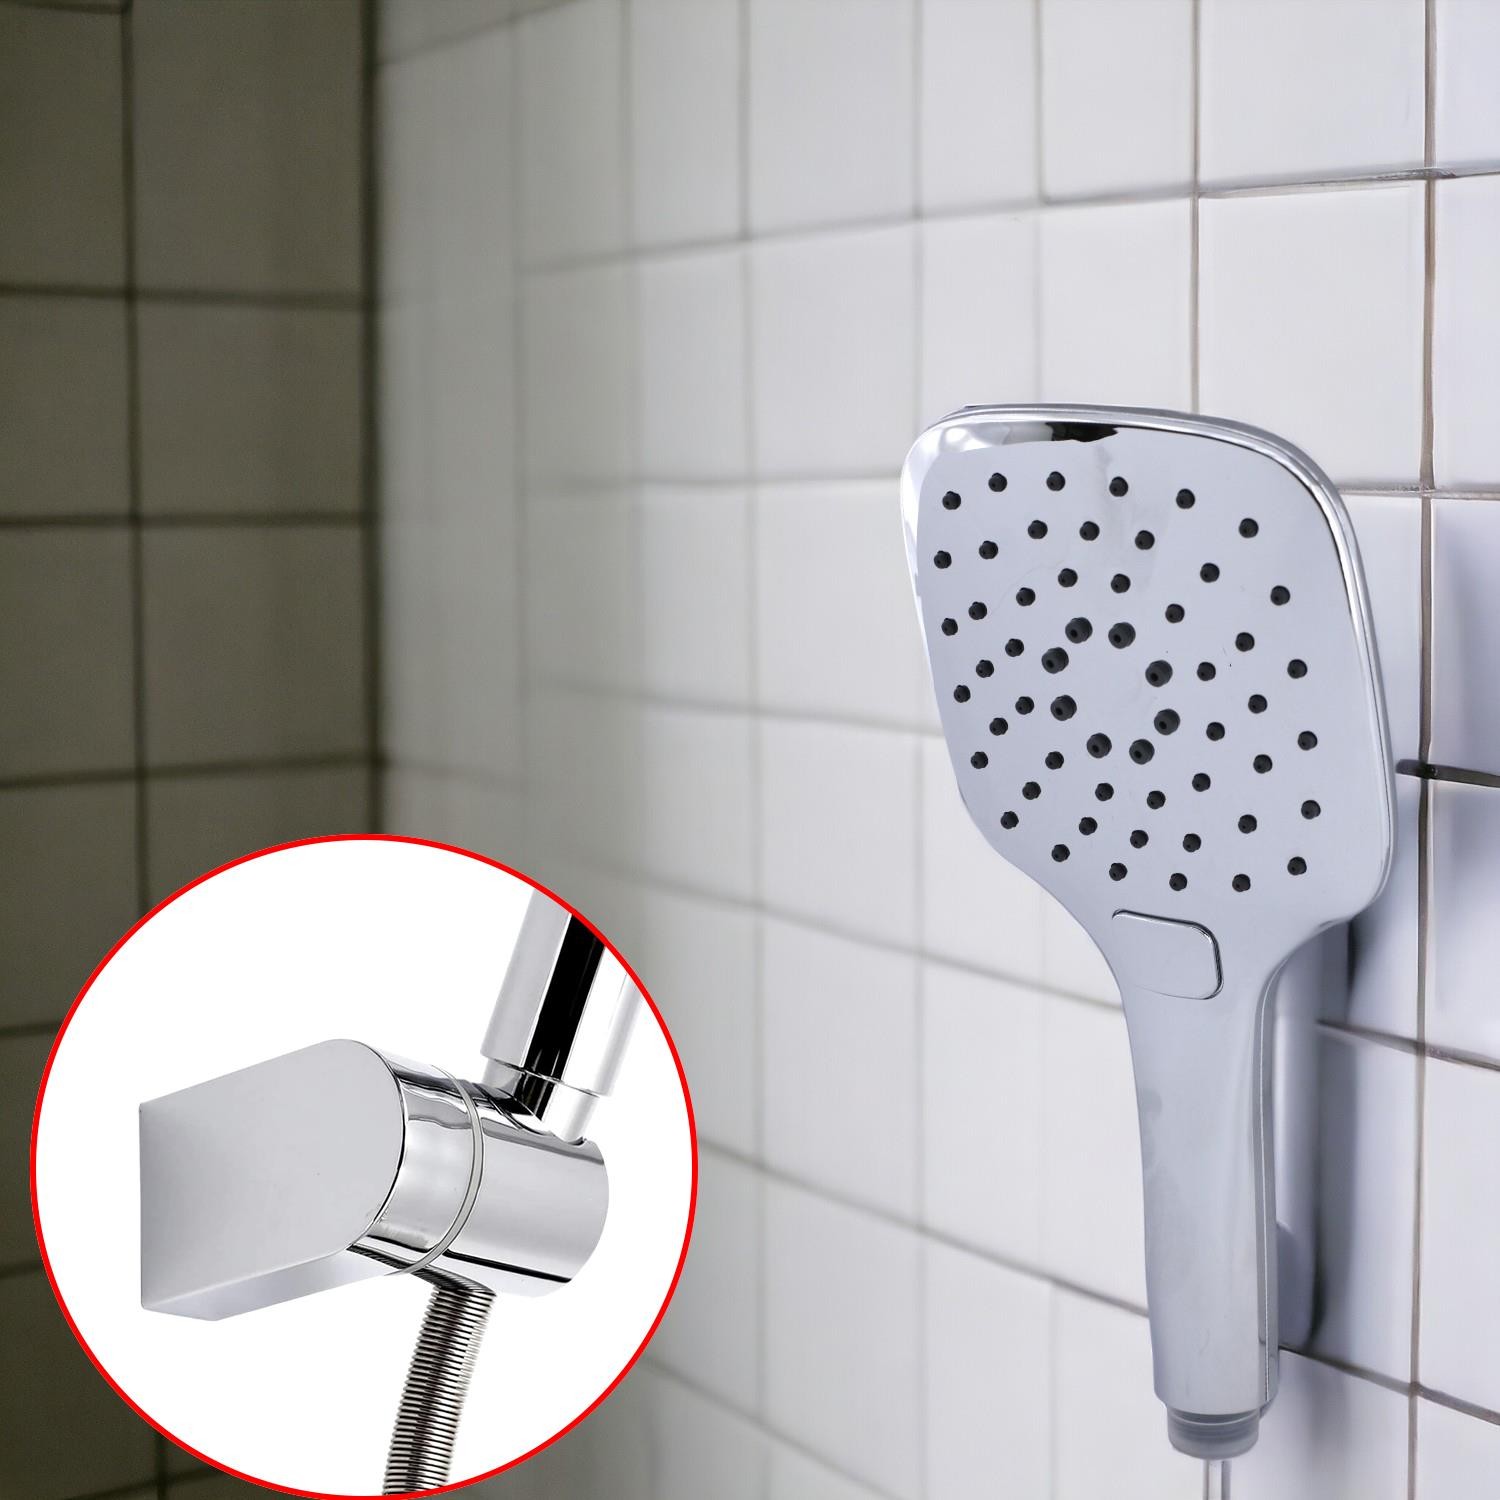 Lüks Duş Başlığı Banyo Fişkiyesi Seti Füme Renk Fiskiye Telefon Fonksiyonlu Başlık Metal Hortum